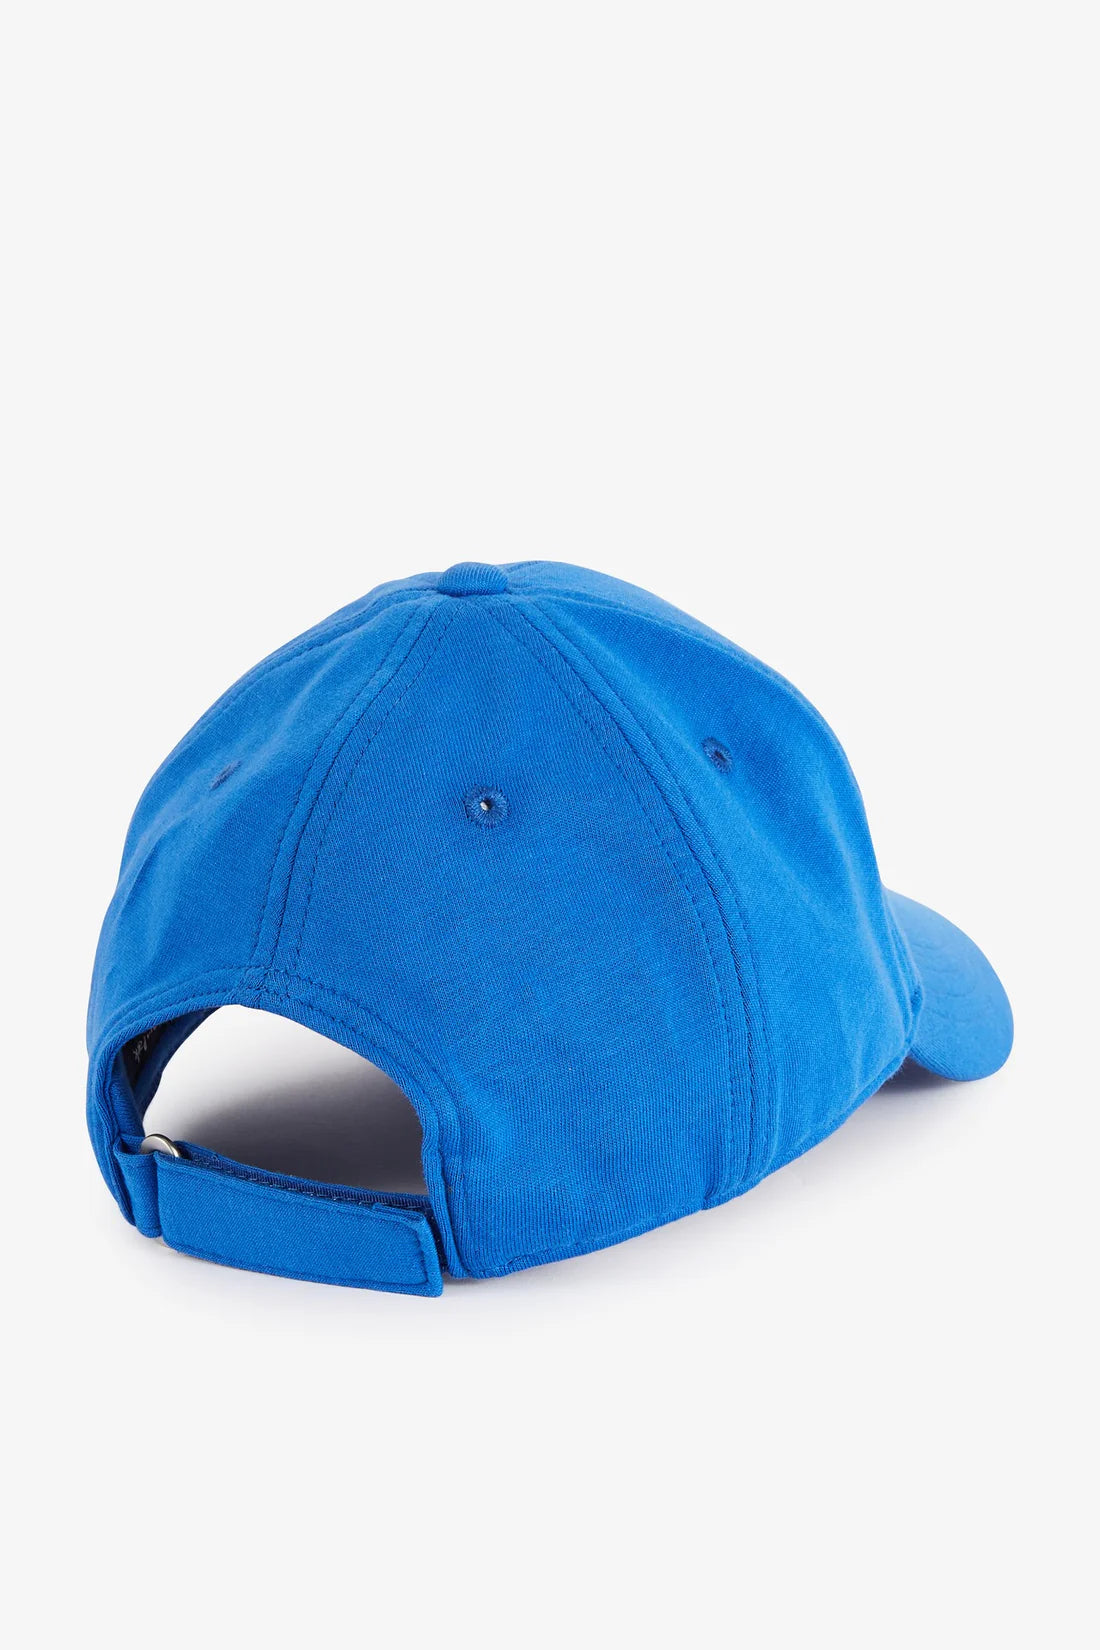 Royal cobalt blue cap by Eden Park